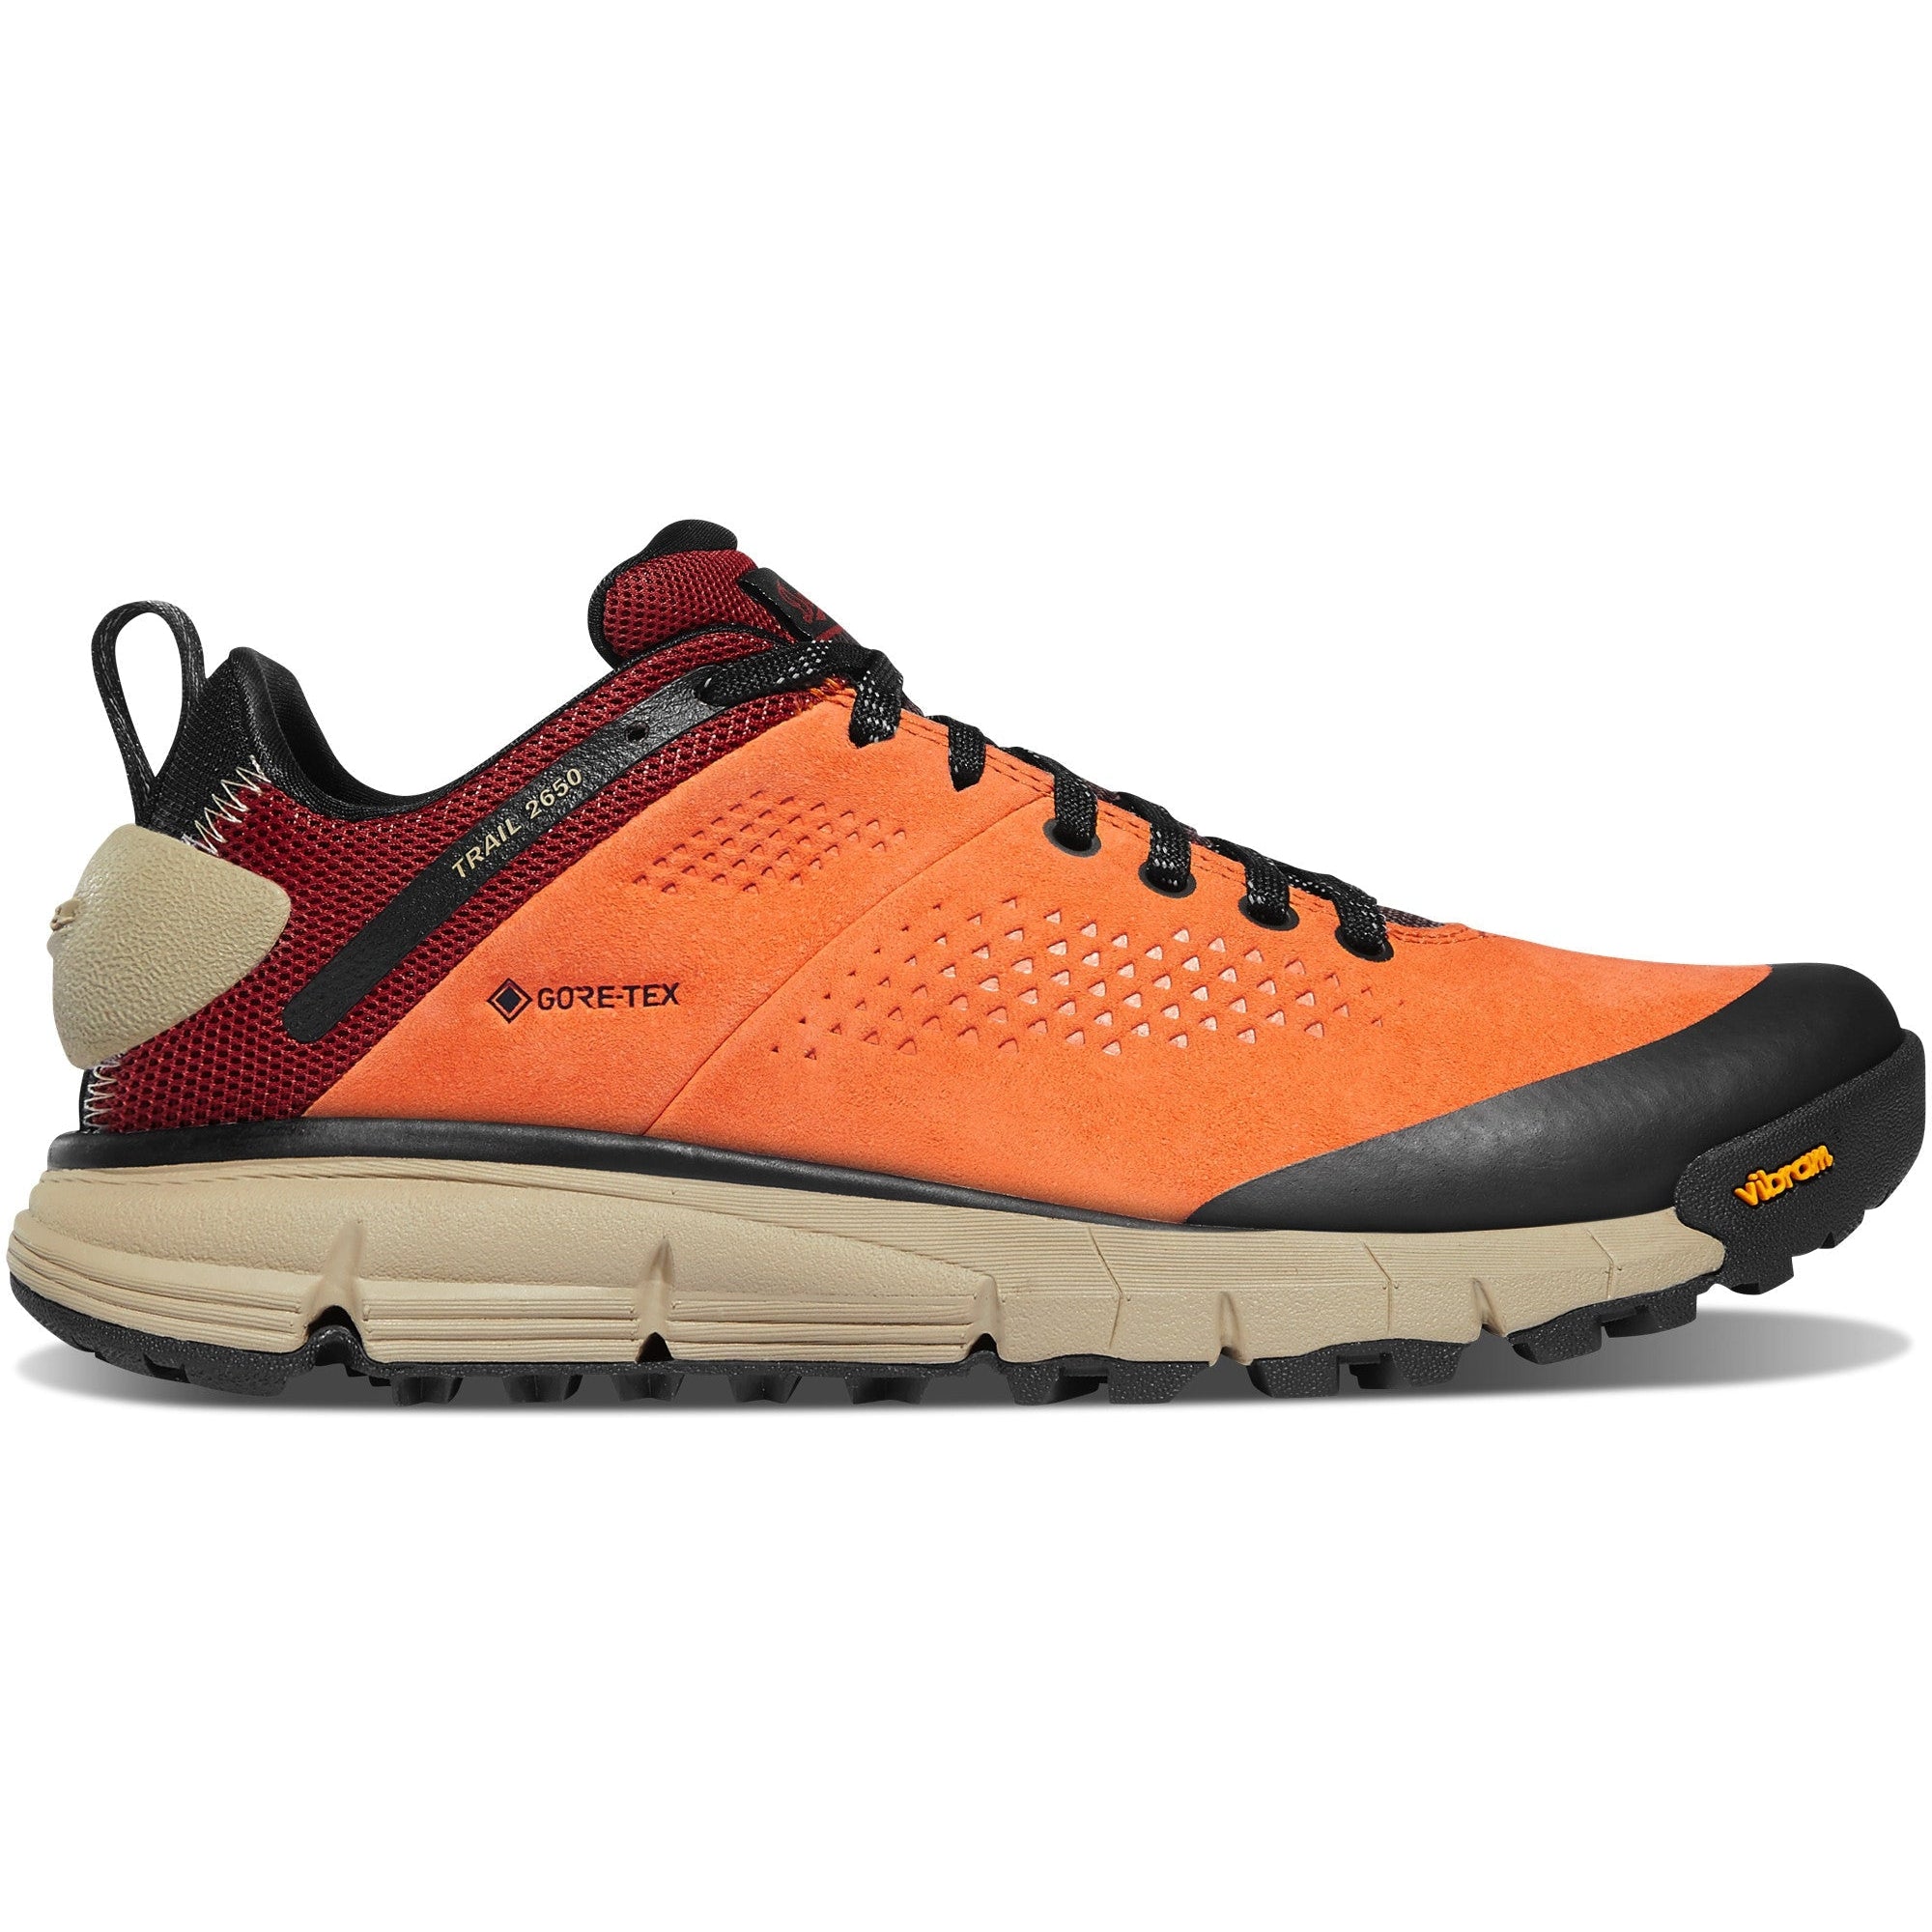 Danner Women's Trail 2650 GTX 3" WP Hiker Shoe - Tangerine - 61289  - Overlook Boots